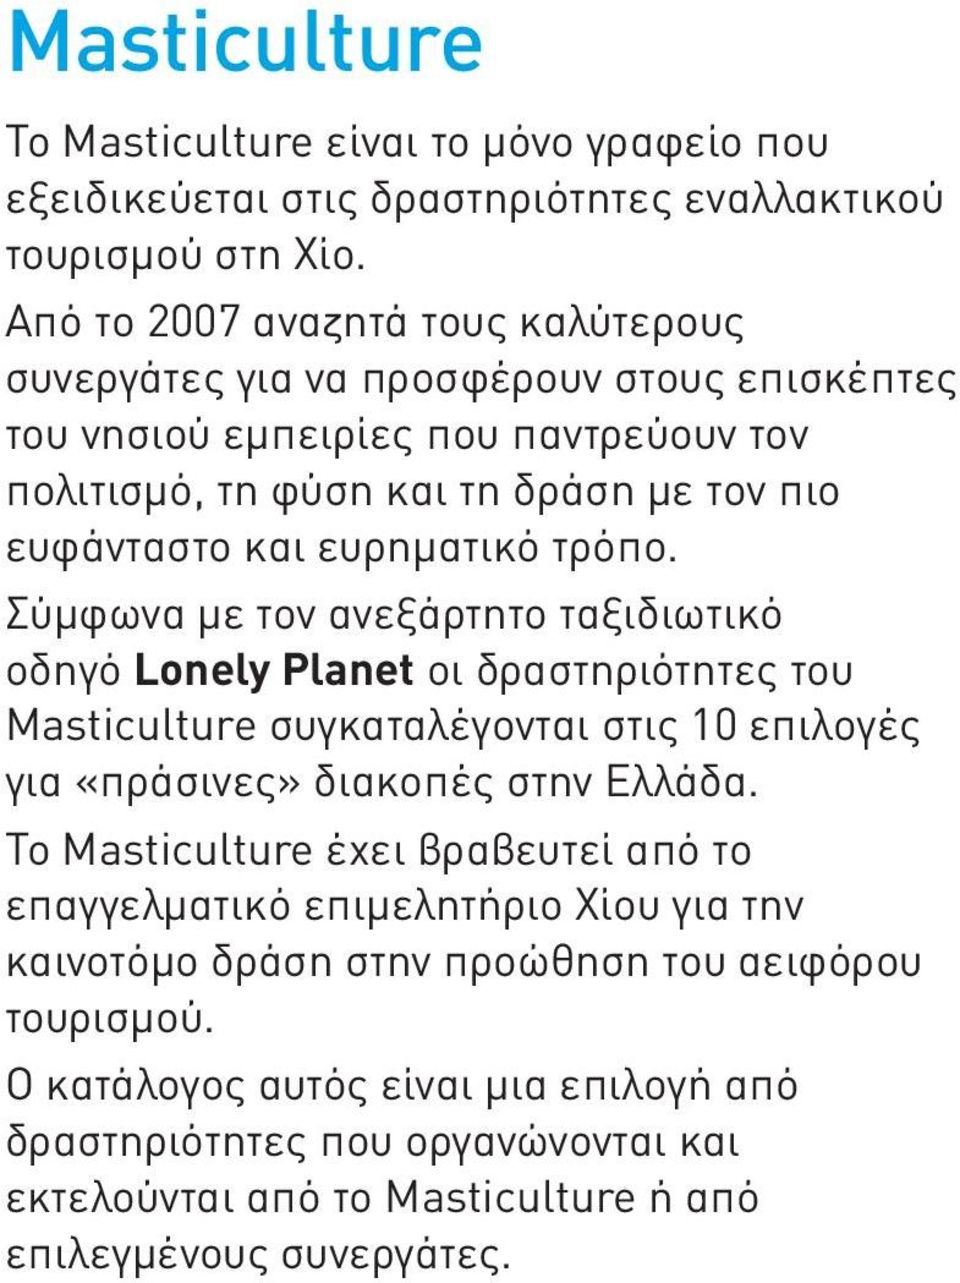 ευρηματικό τρόπο. Σύμφωνα με τον ανεξάρτητο ταξιδιωτικό οδηγό Lonely Planet οι δραστηριότητες του Masticulture συγκαταλέγονται στις 10 επιλογές για «πράσινες» διακοπές στην Ελλάδα.